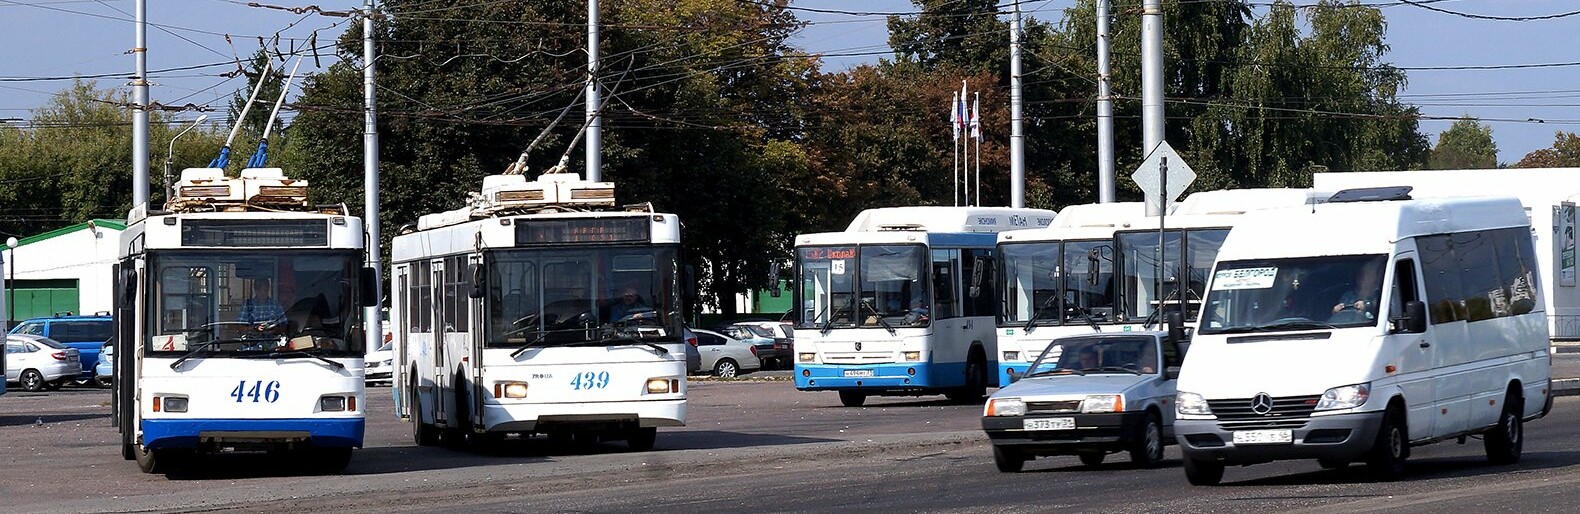 Белгородцы попросили спикера Госдумы Володина защитить троллейбусы